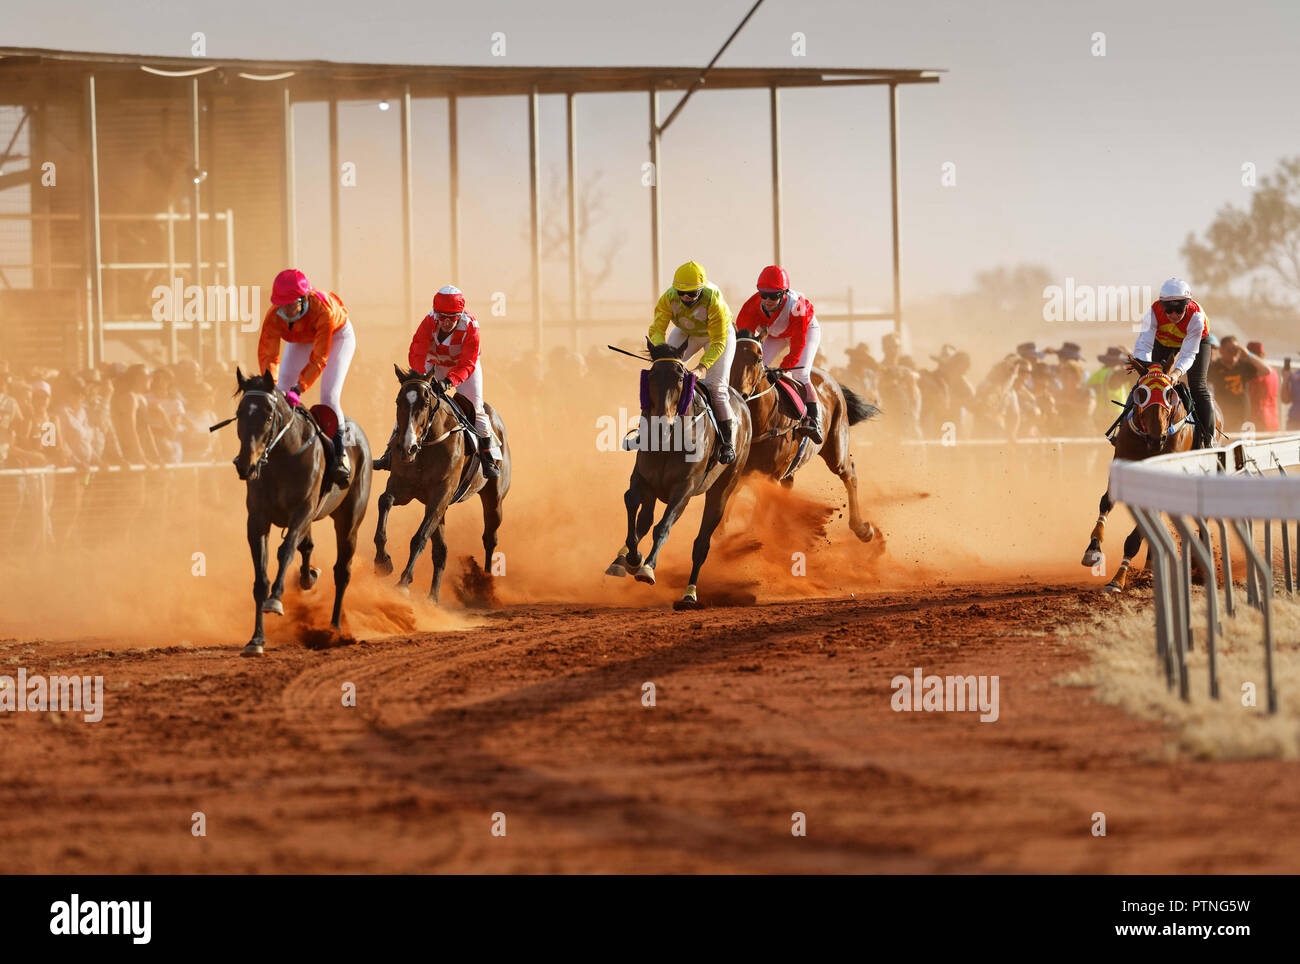 La 97º marcha anual de las carreras de caballos de Bush en Landor,,1000km al norte de Perth, Australia. Oct 2018. Foto de stock